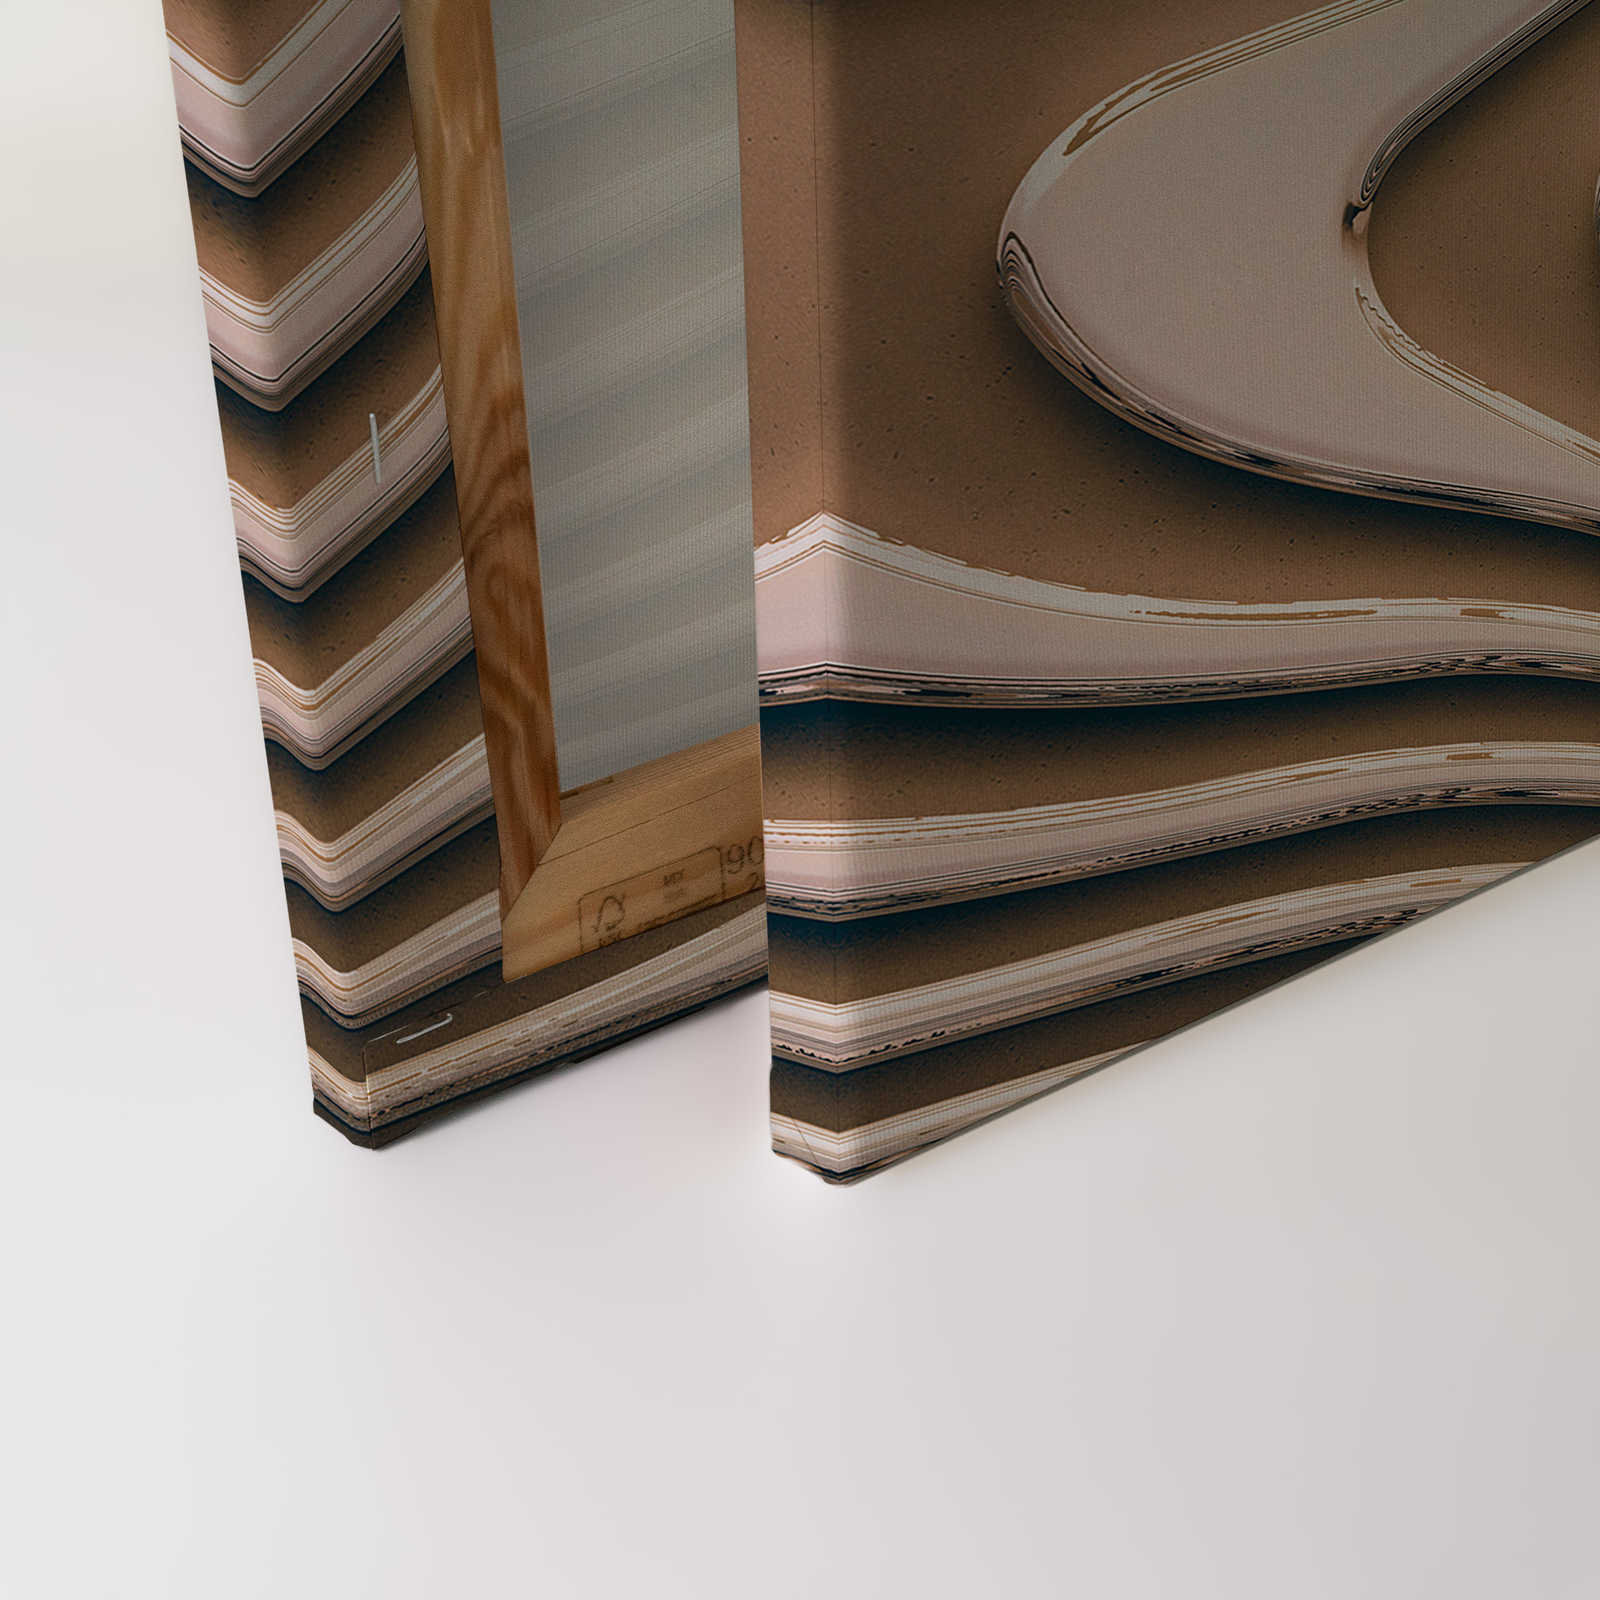             Toile avec lignes ondulées et ombres | beige, marron - 0,90 m x 0,60 m
        